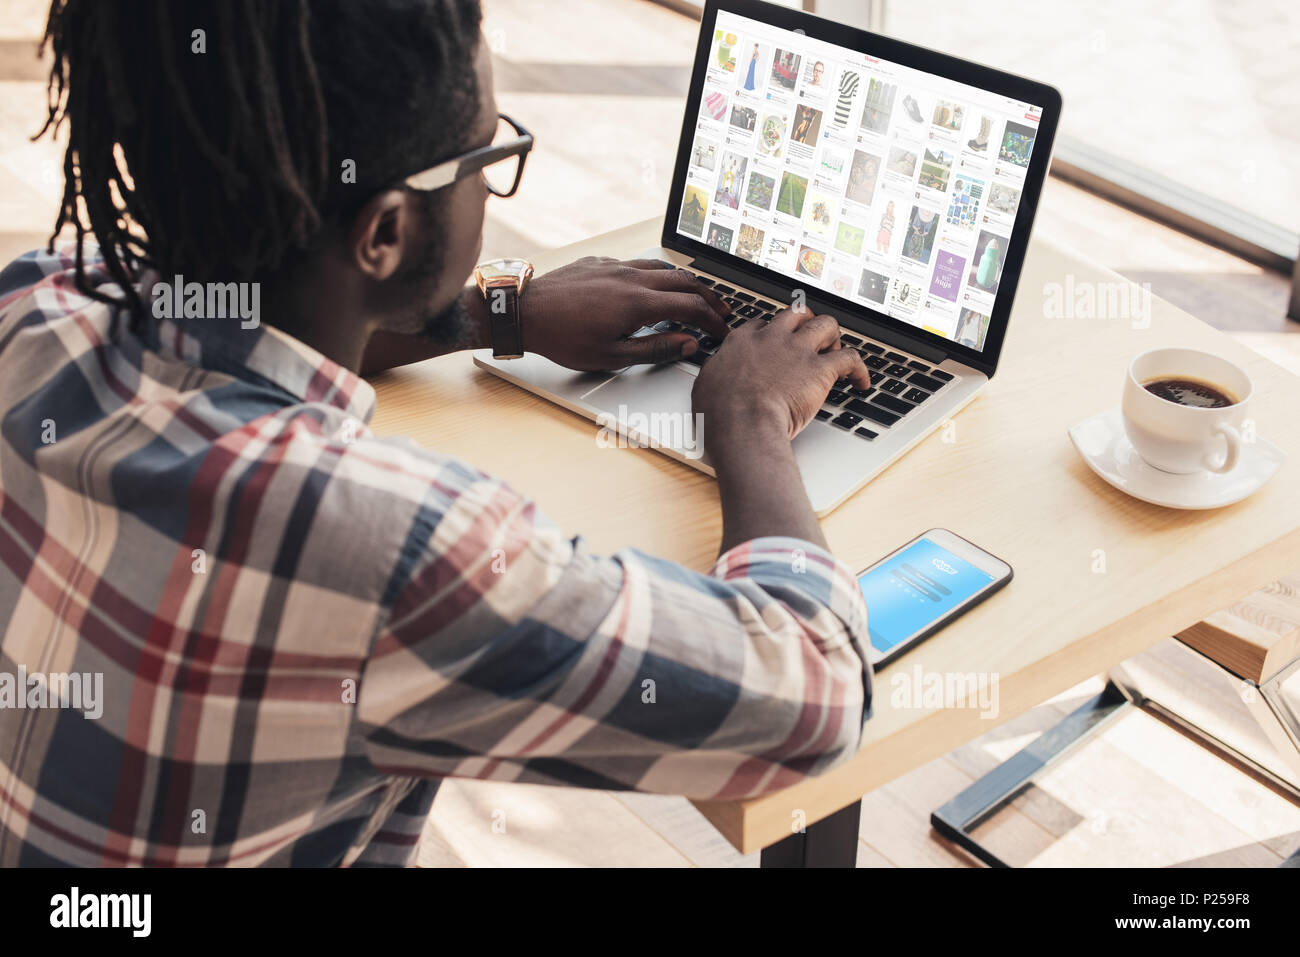 African American man using laptop avec pinterest site web et smartphone avec appareil skype Banque D'Images